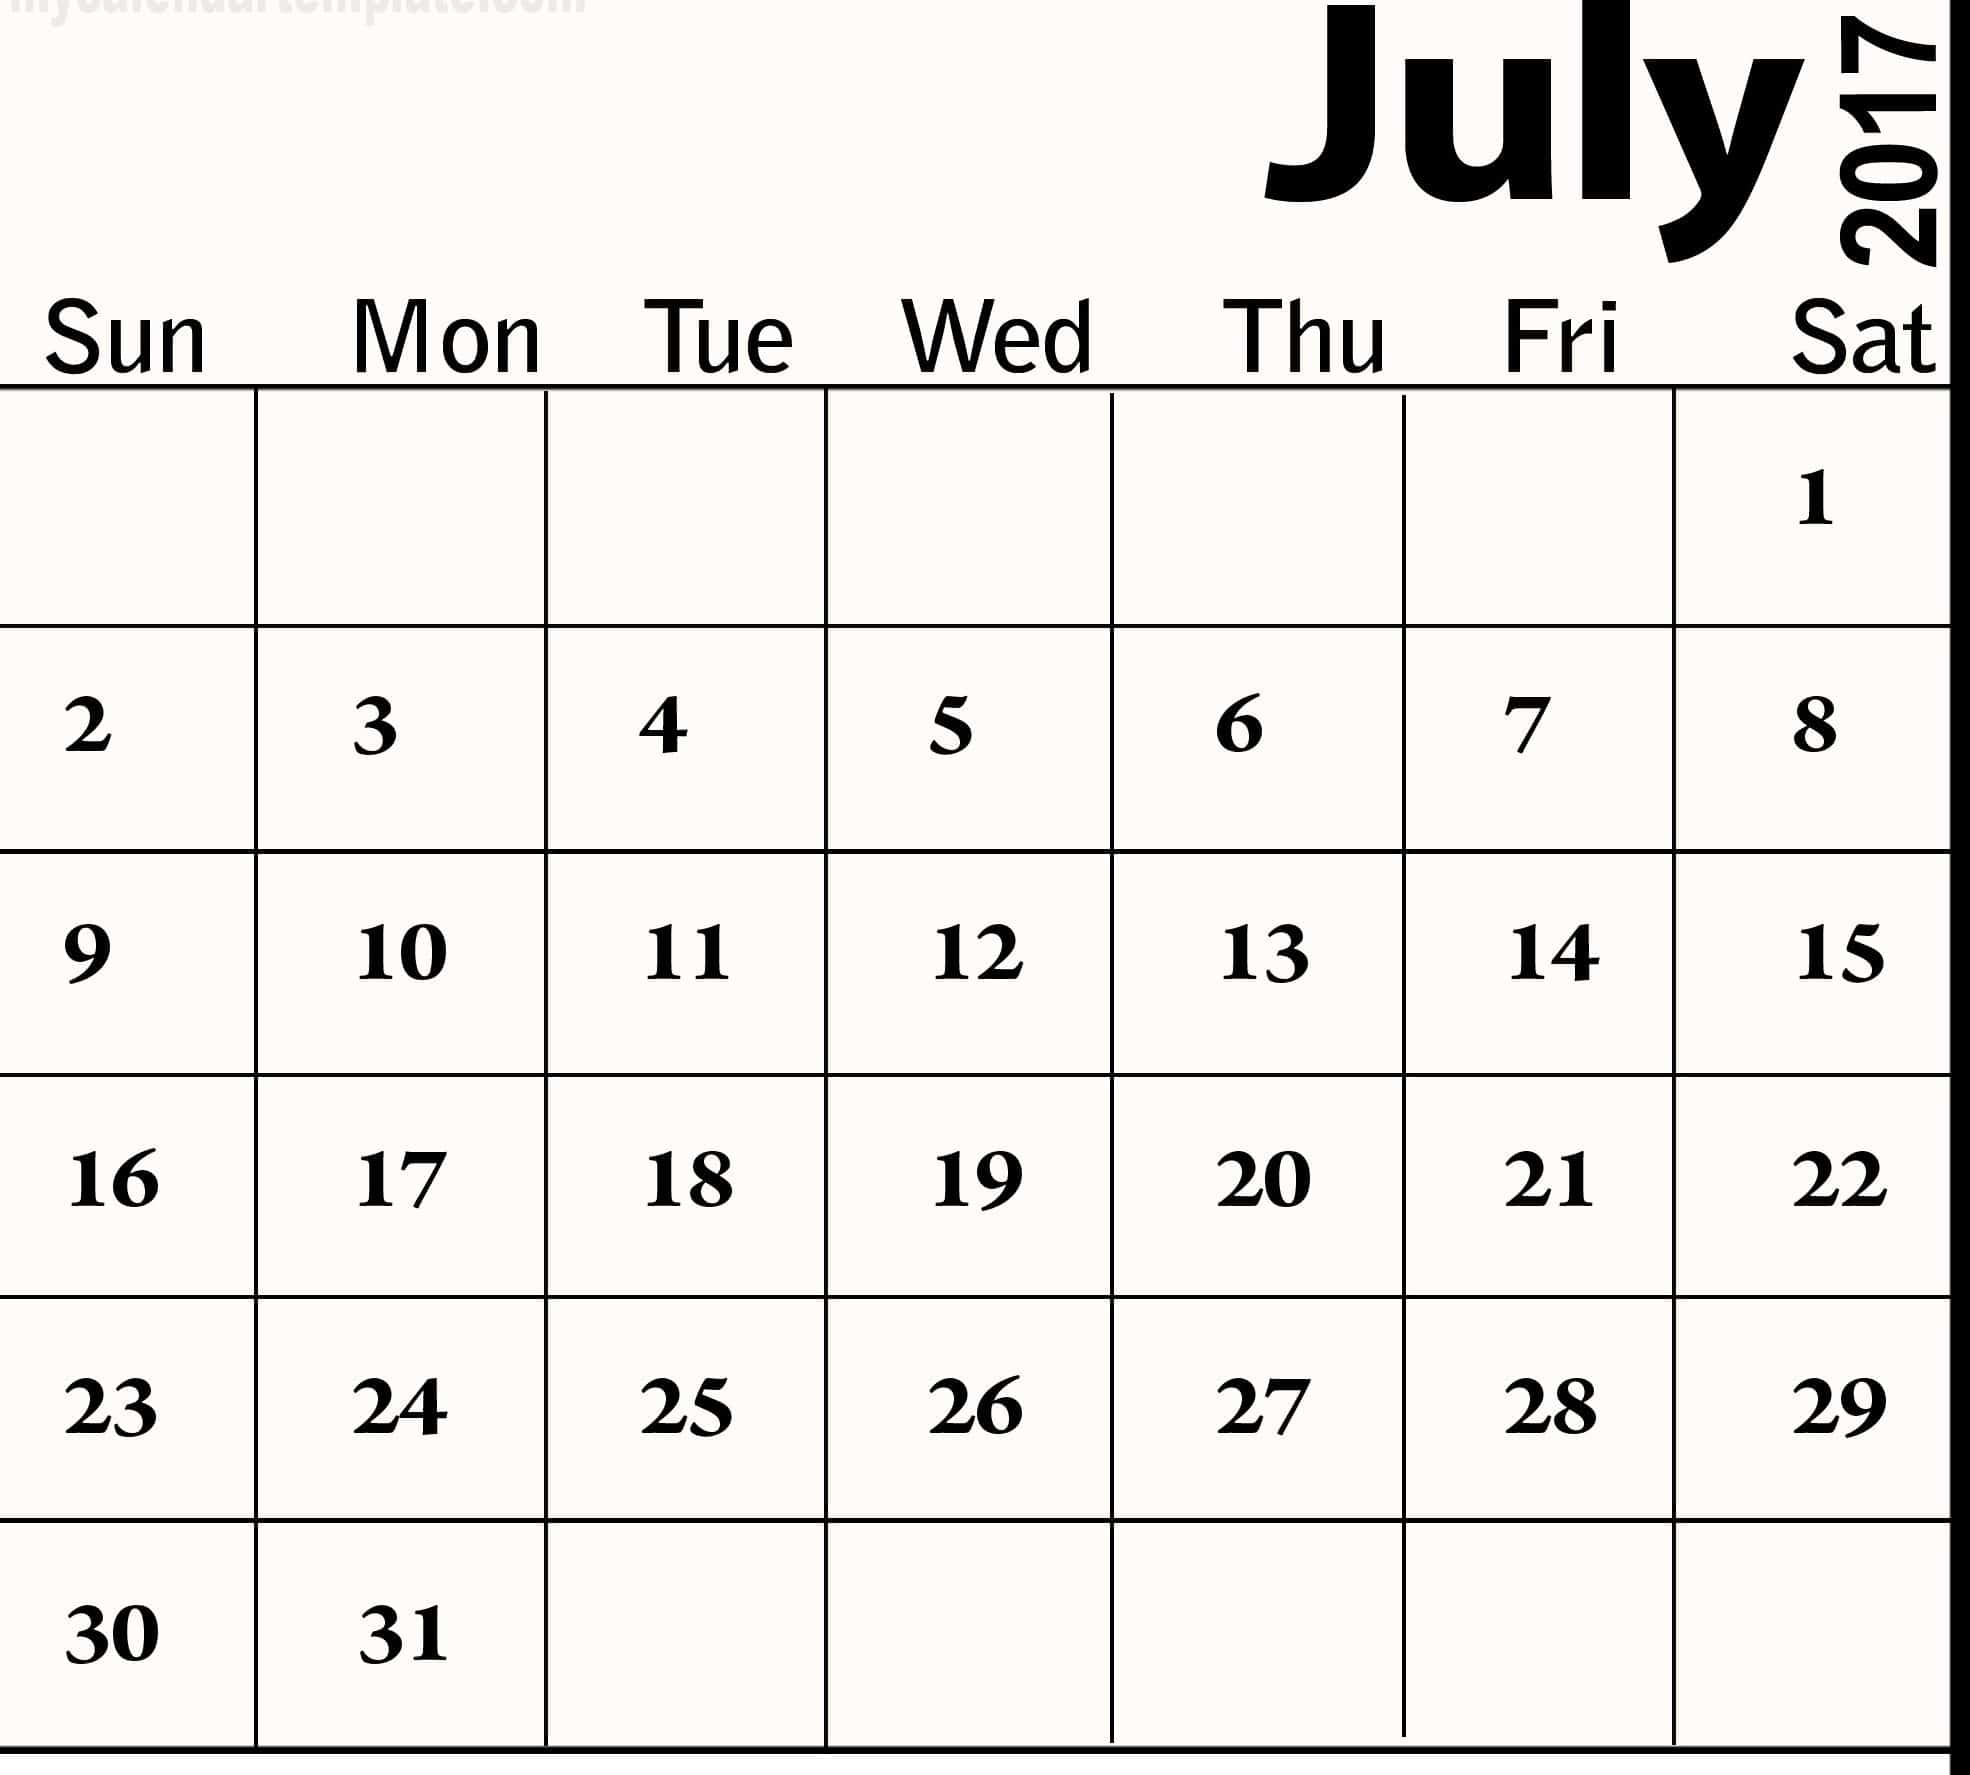 June July 2017 Calendar Images